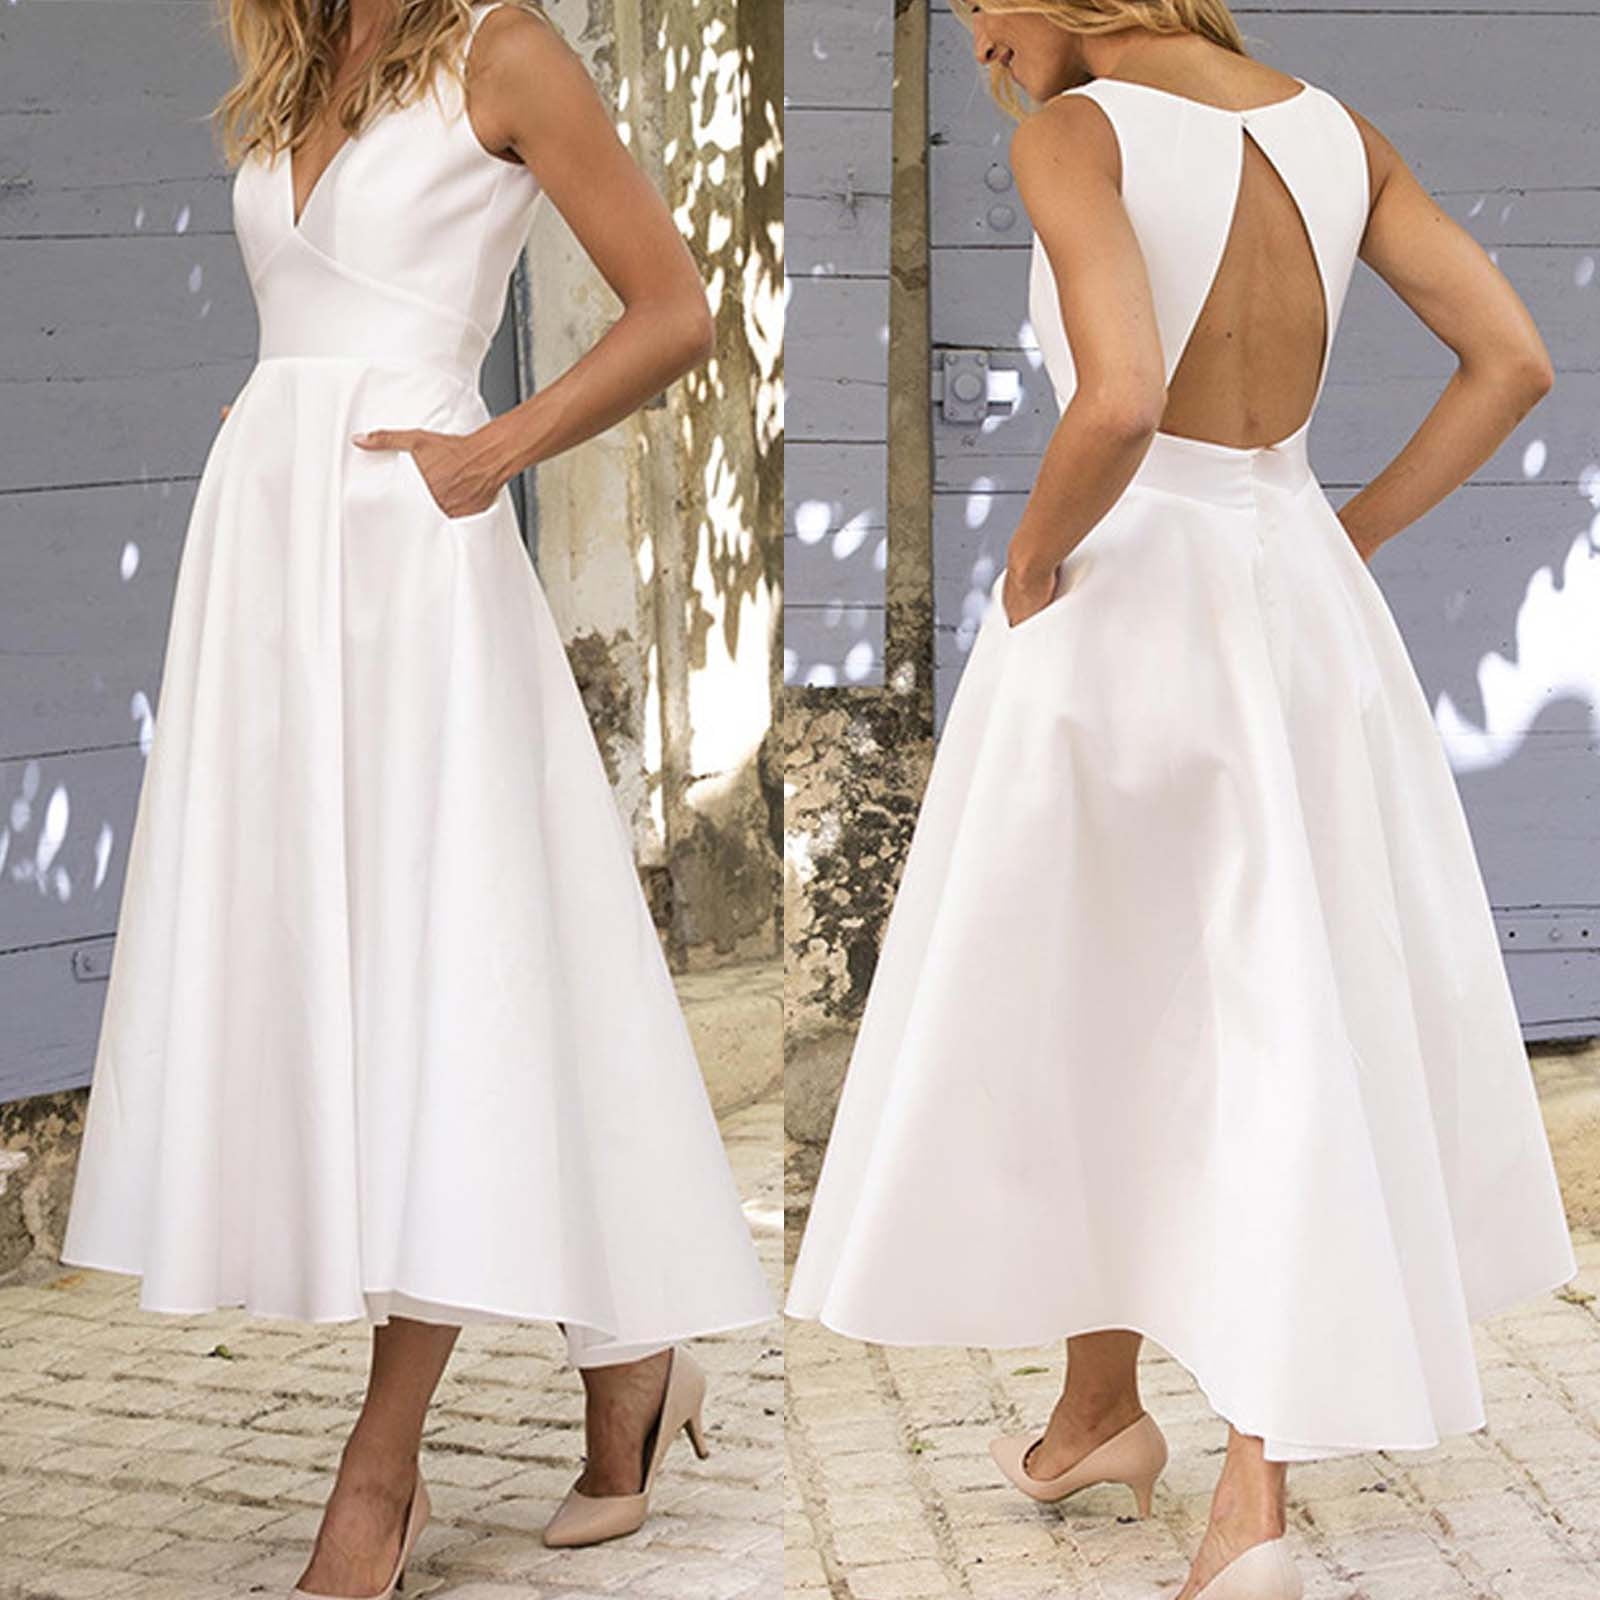 white dresses for women near me